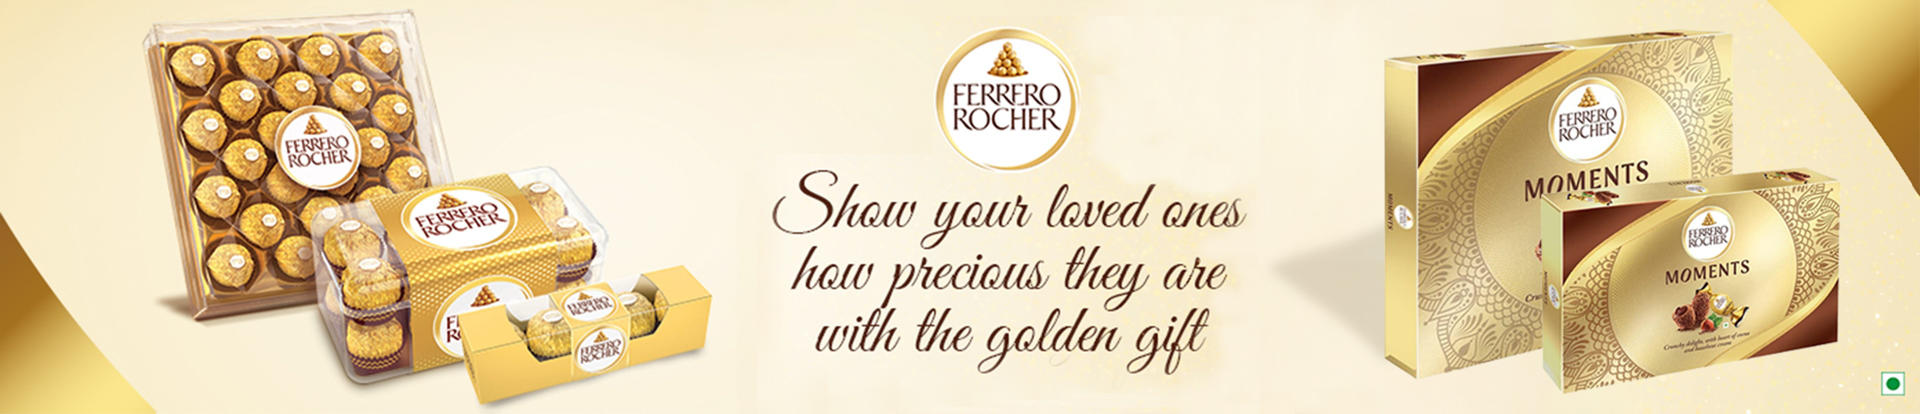 Picture for brand Ferrero Rocher